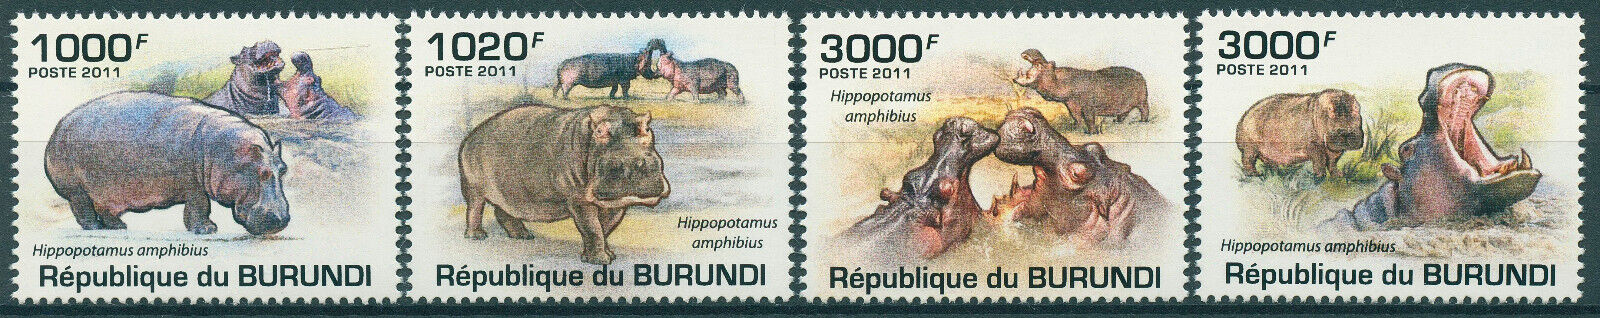 Burundi 2011 MNH Wild Animals Stamps Hippos Hippopotamus 4v Set